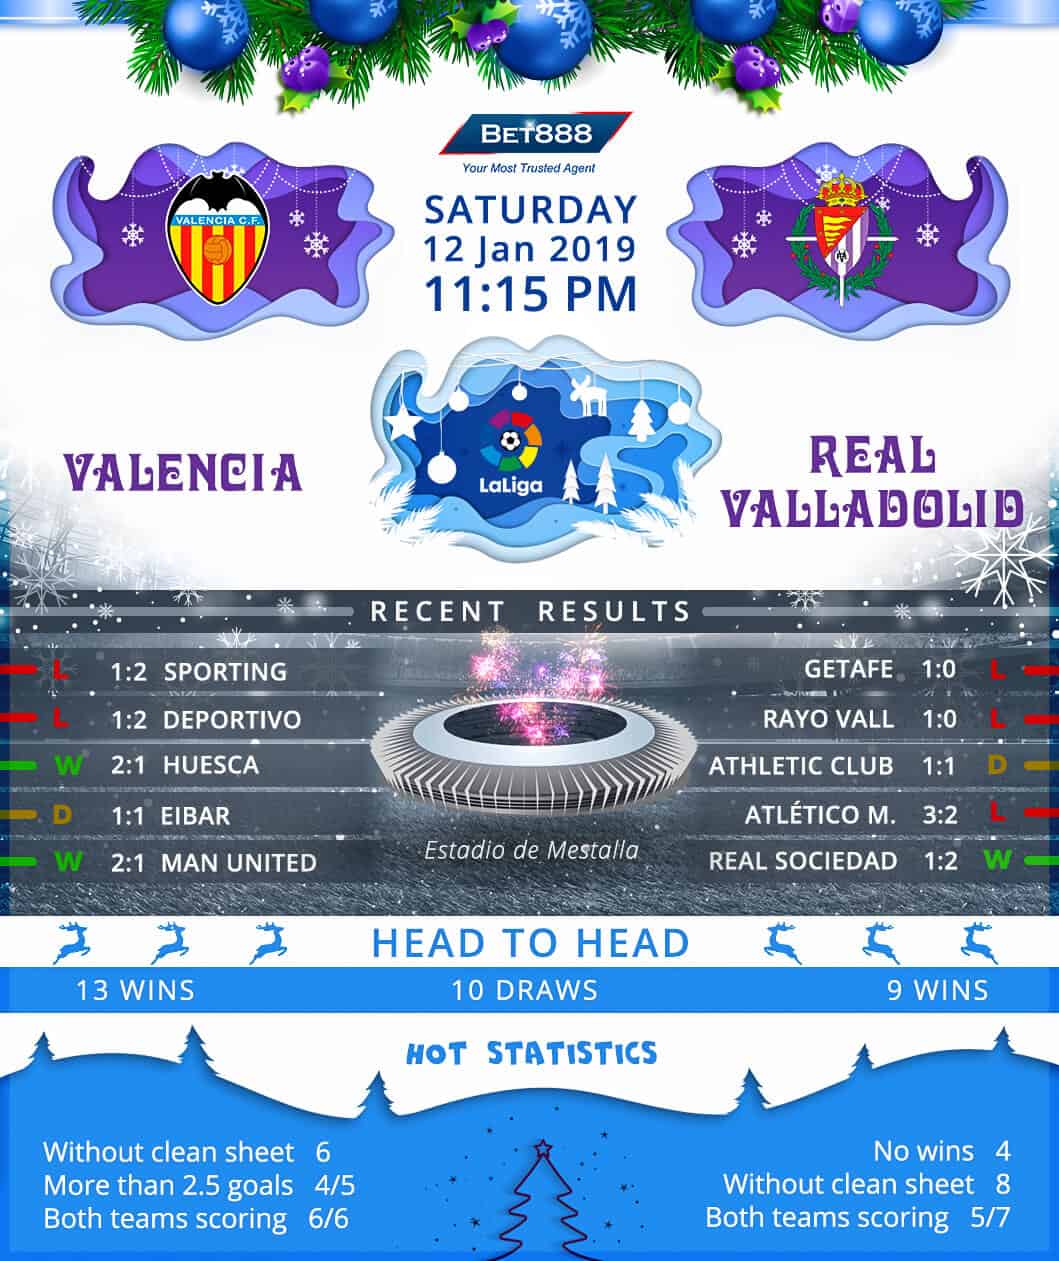 Valencia vs Real Valladolid 12/01/19